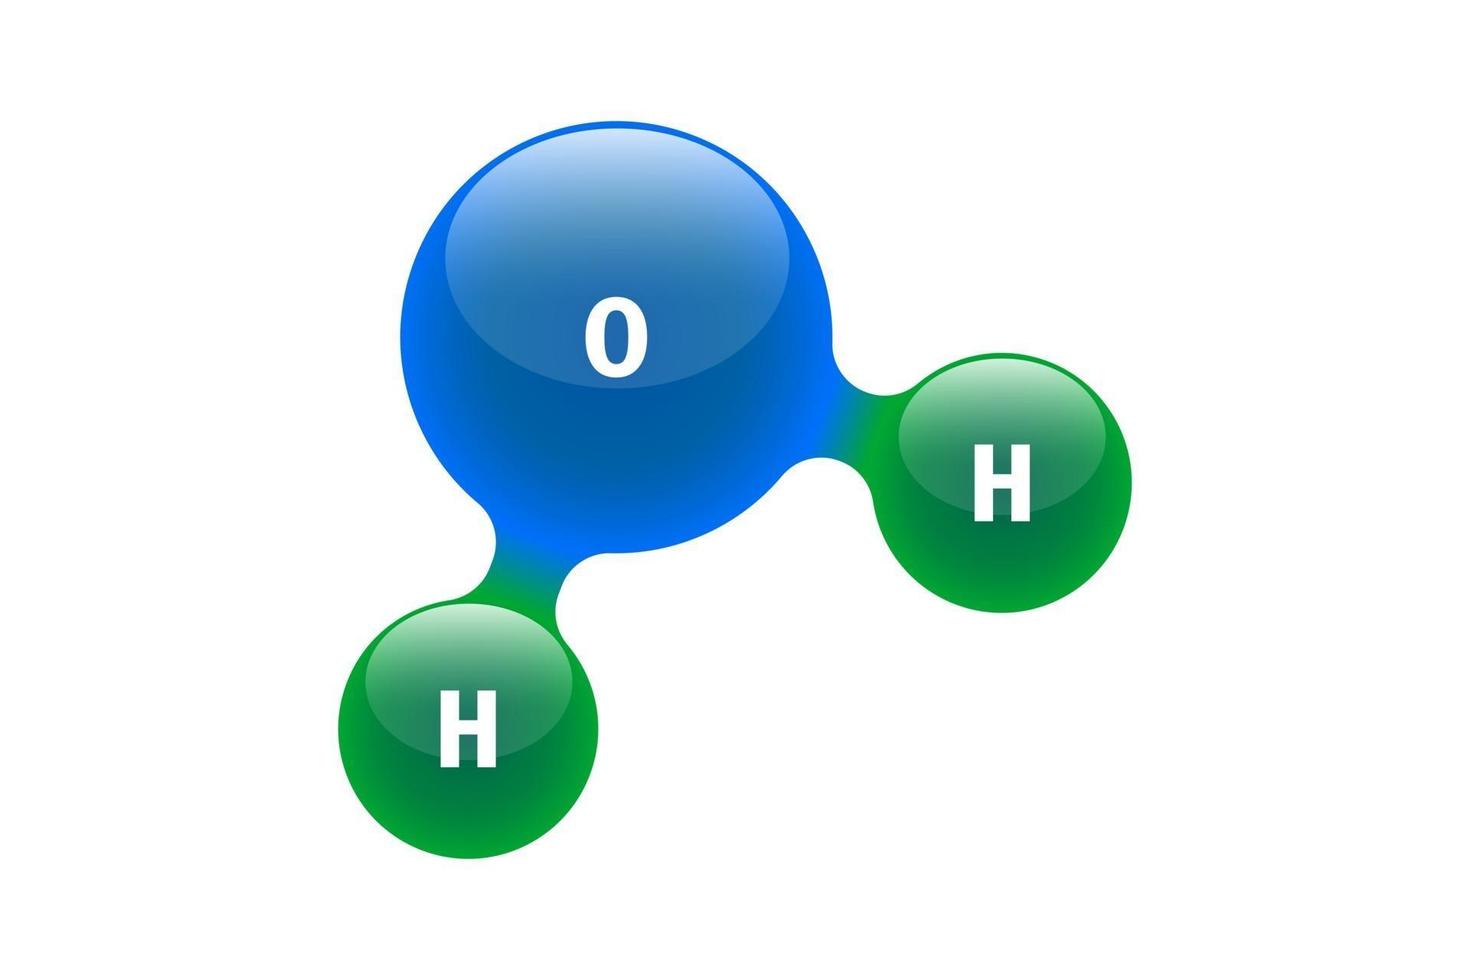 modelo de química de la molécula de agua h2o elementos científicos.  partículas integradas de hidrógeno y oxígeno compuesto inorgánico natural.  Ilustración de vector de estructura molecular 3d aislado sobre fondo blanco  2839210